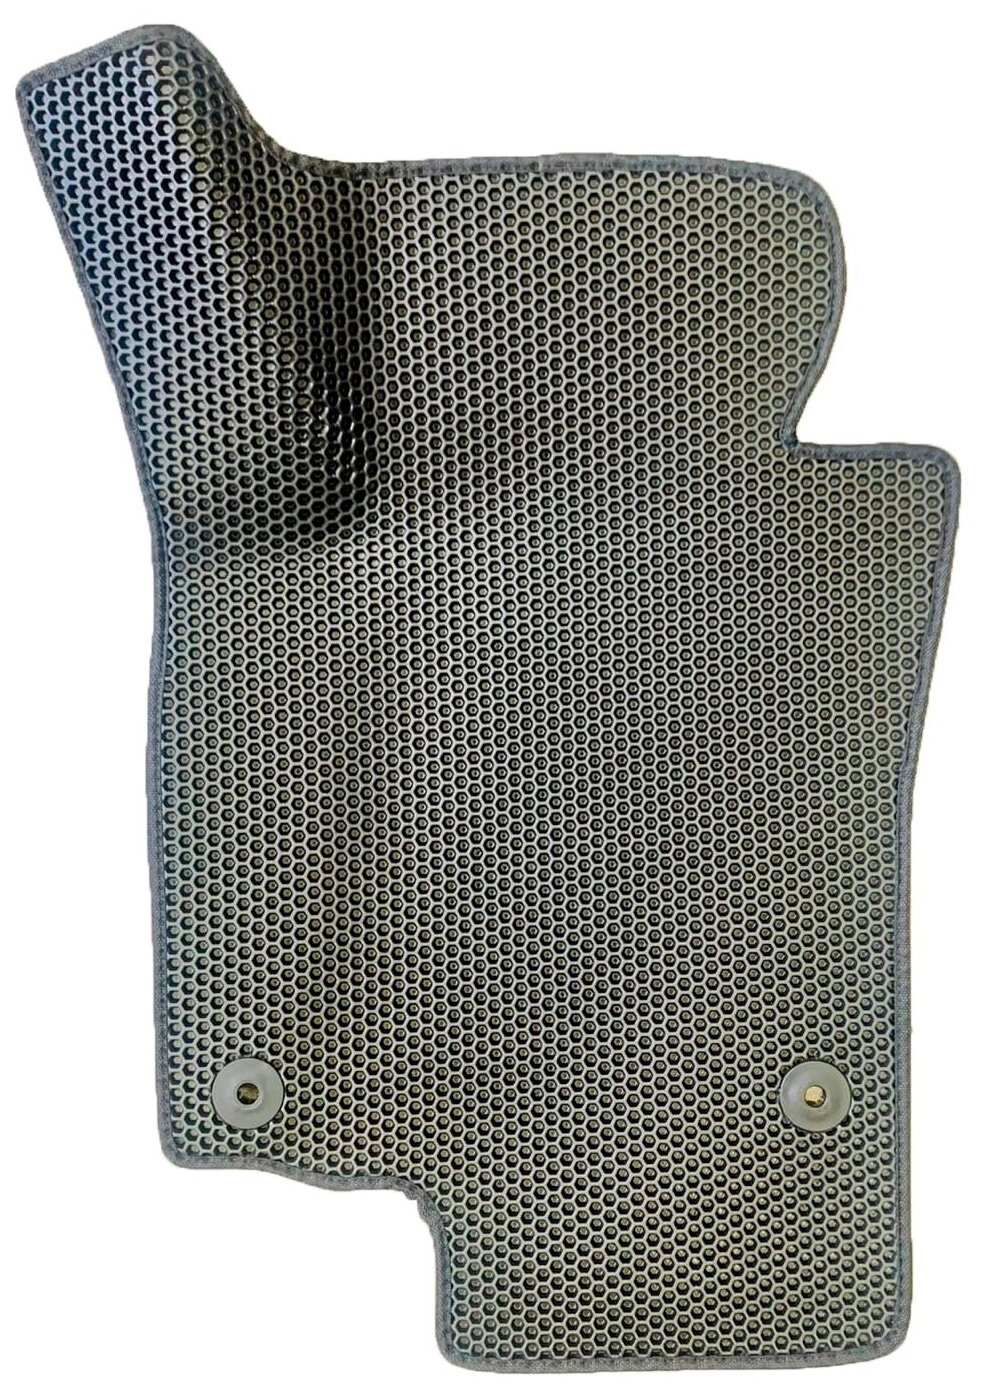 EVA коврик для Skoda Octavia A5 (2004-2013) 2 пок. / Шкода Октавия А5 / 3Д лапка - без разреза / Серые соты, серый кант